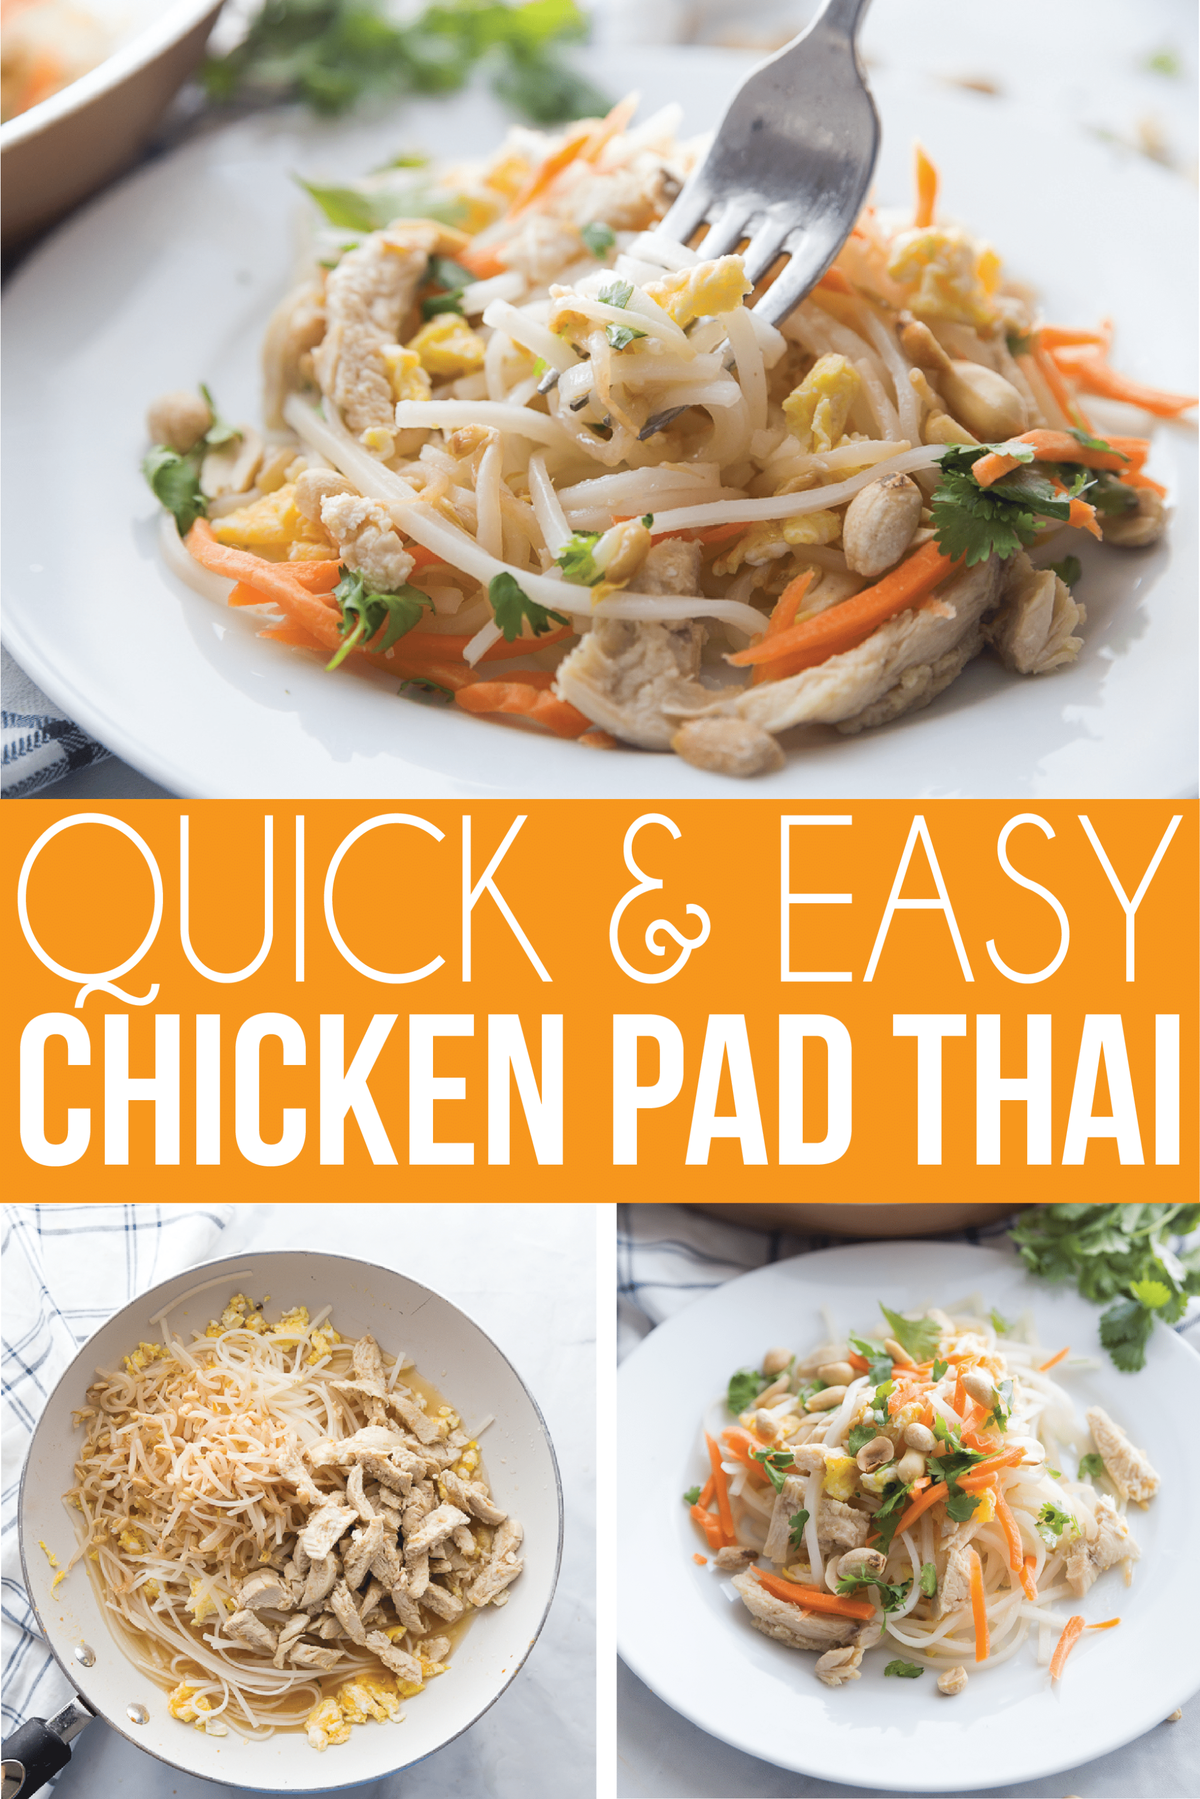 Μια εύκολη συνταγή Pad Thai που μπορεί να φτιαχτεί με κοτόπουλο ή γαρίδες. Ή πηγαίνετε για tofu αντί να κάνετε αυτό μια υπέροχη ταϊλανδέζικη συνταγή για χορτοφάγους ή vegan pad! Είναι η καλύτερη συνταγή Pad Thai που έχω βρει και μπορεί να συμπληρωθεί με όλα τα υγιή συστατικά που θέλετε!